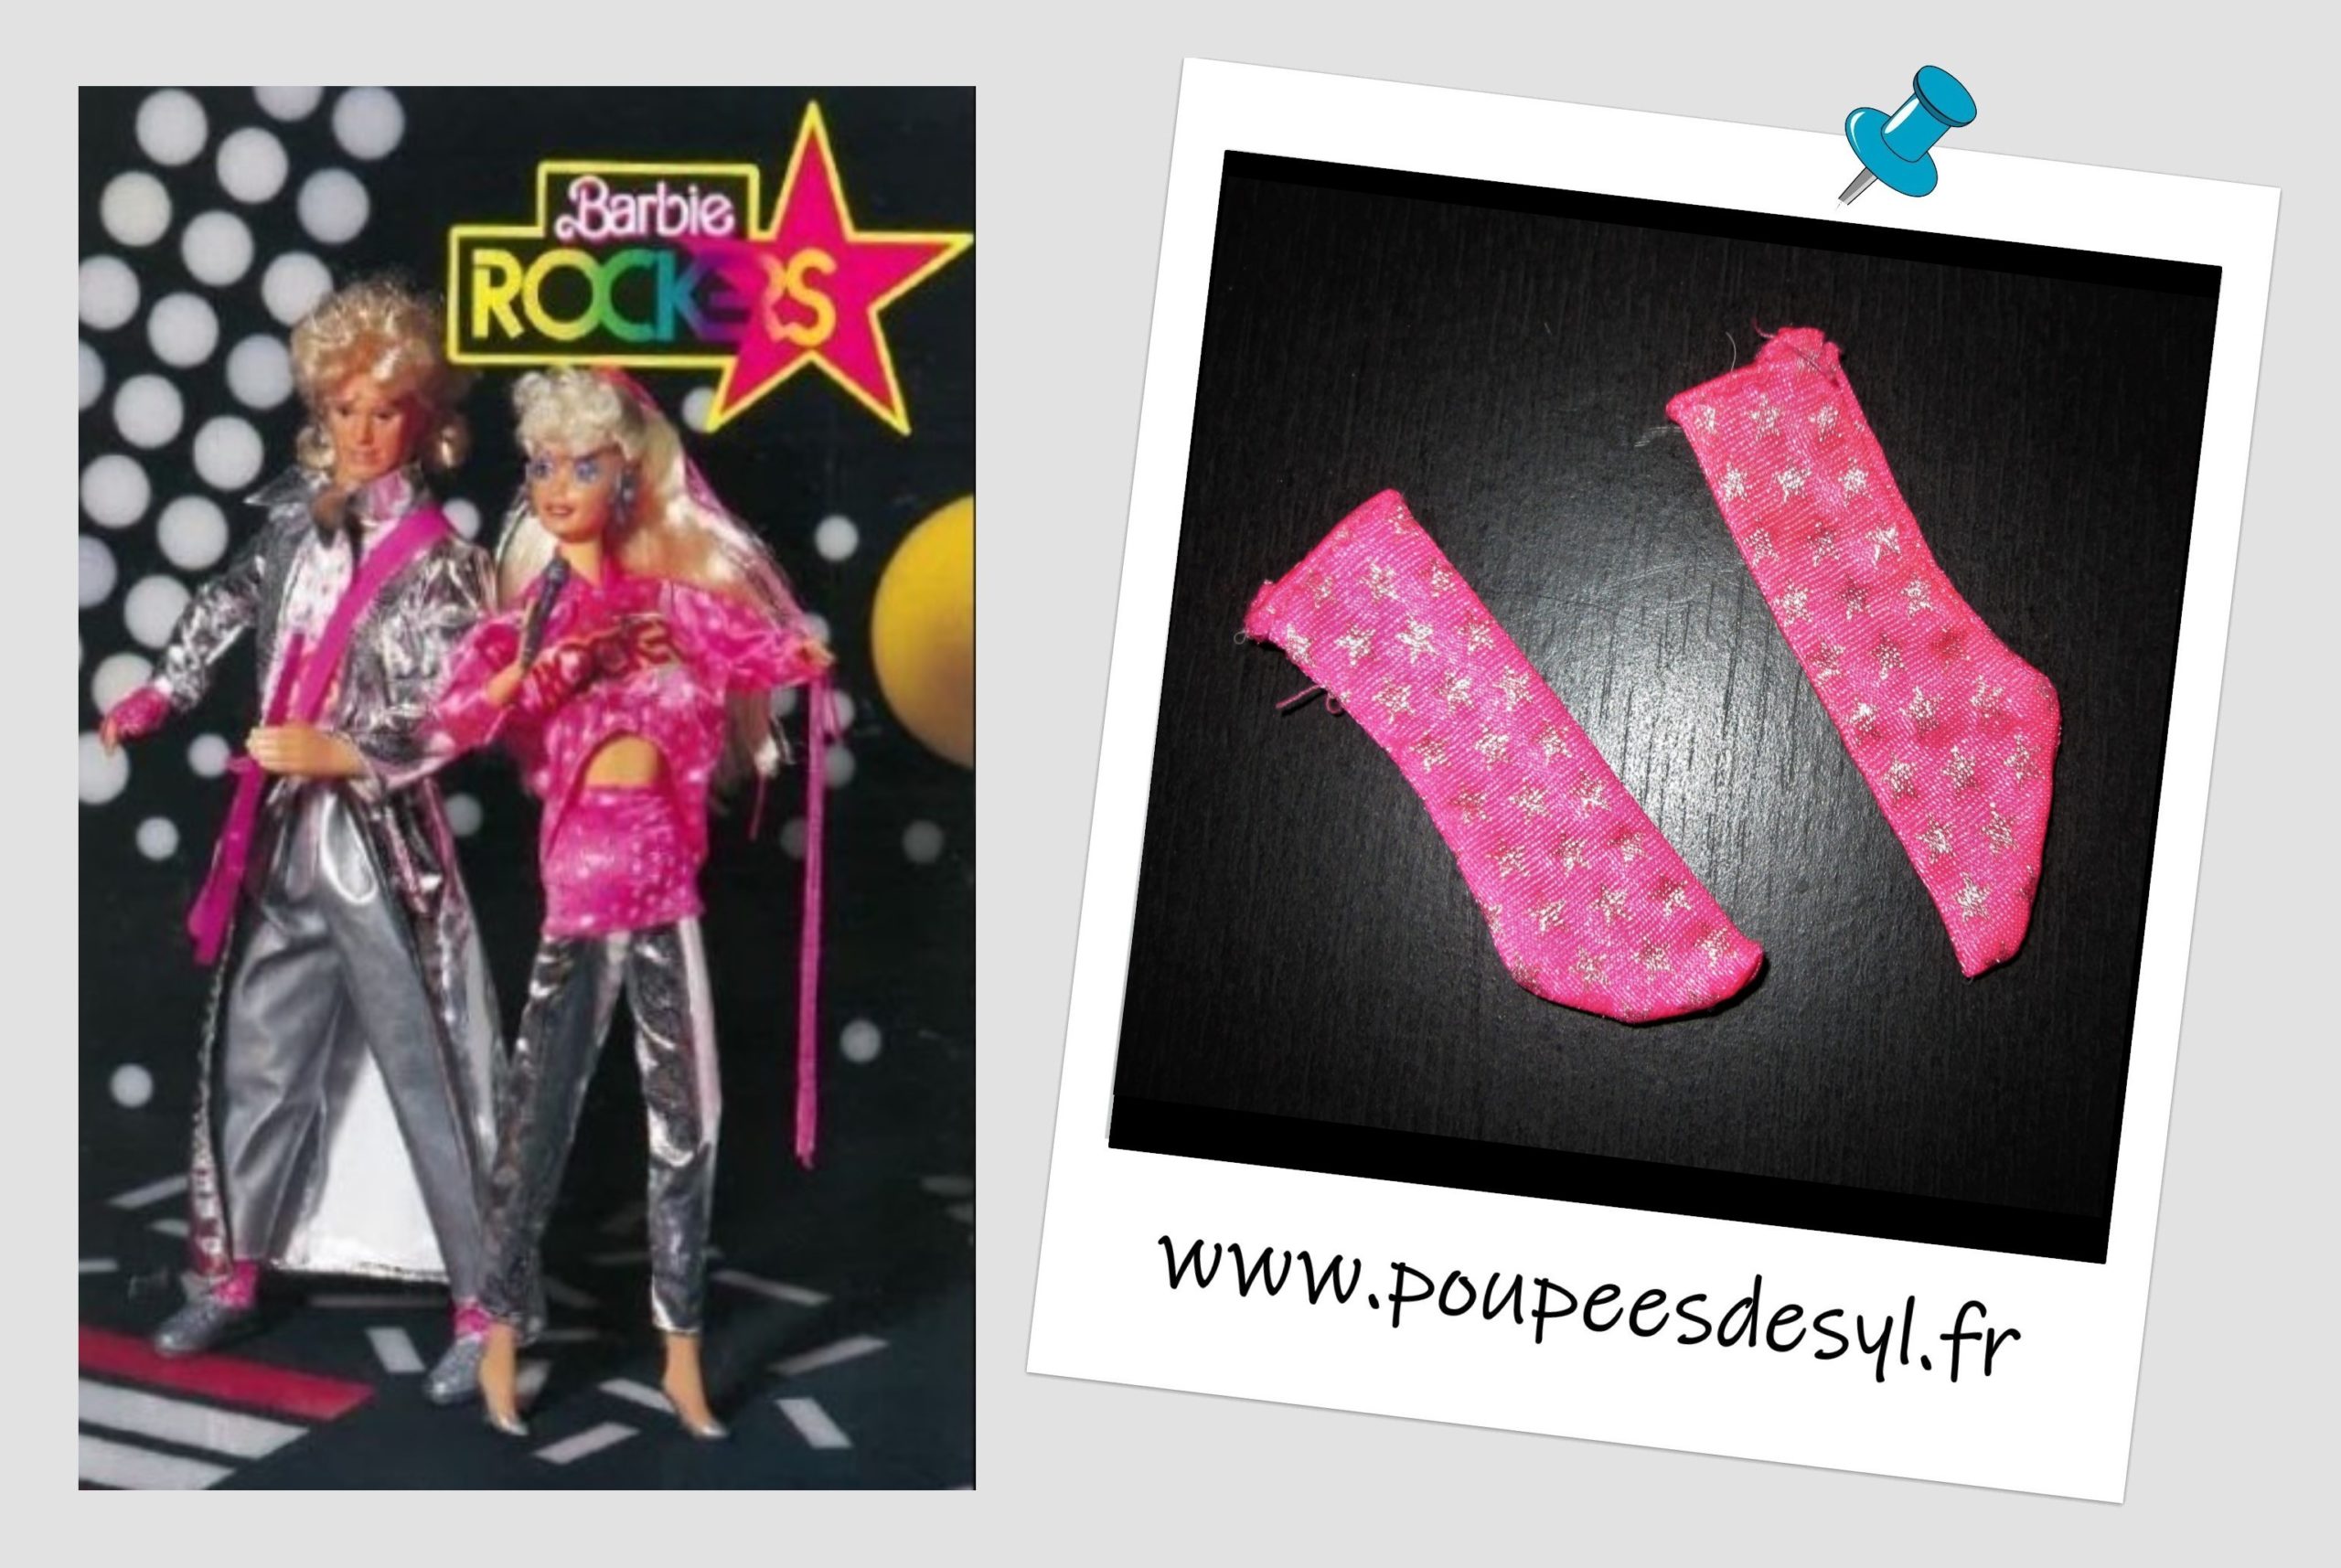 KEN – Paire de chaussettes rose fluo – HOT Rockin’ Fun – BARBIE & ROCKERS – 1986